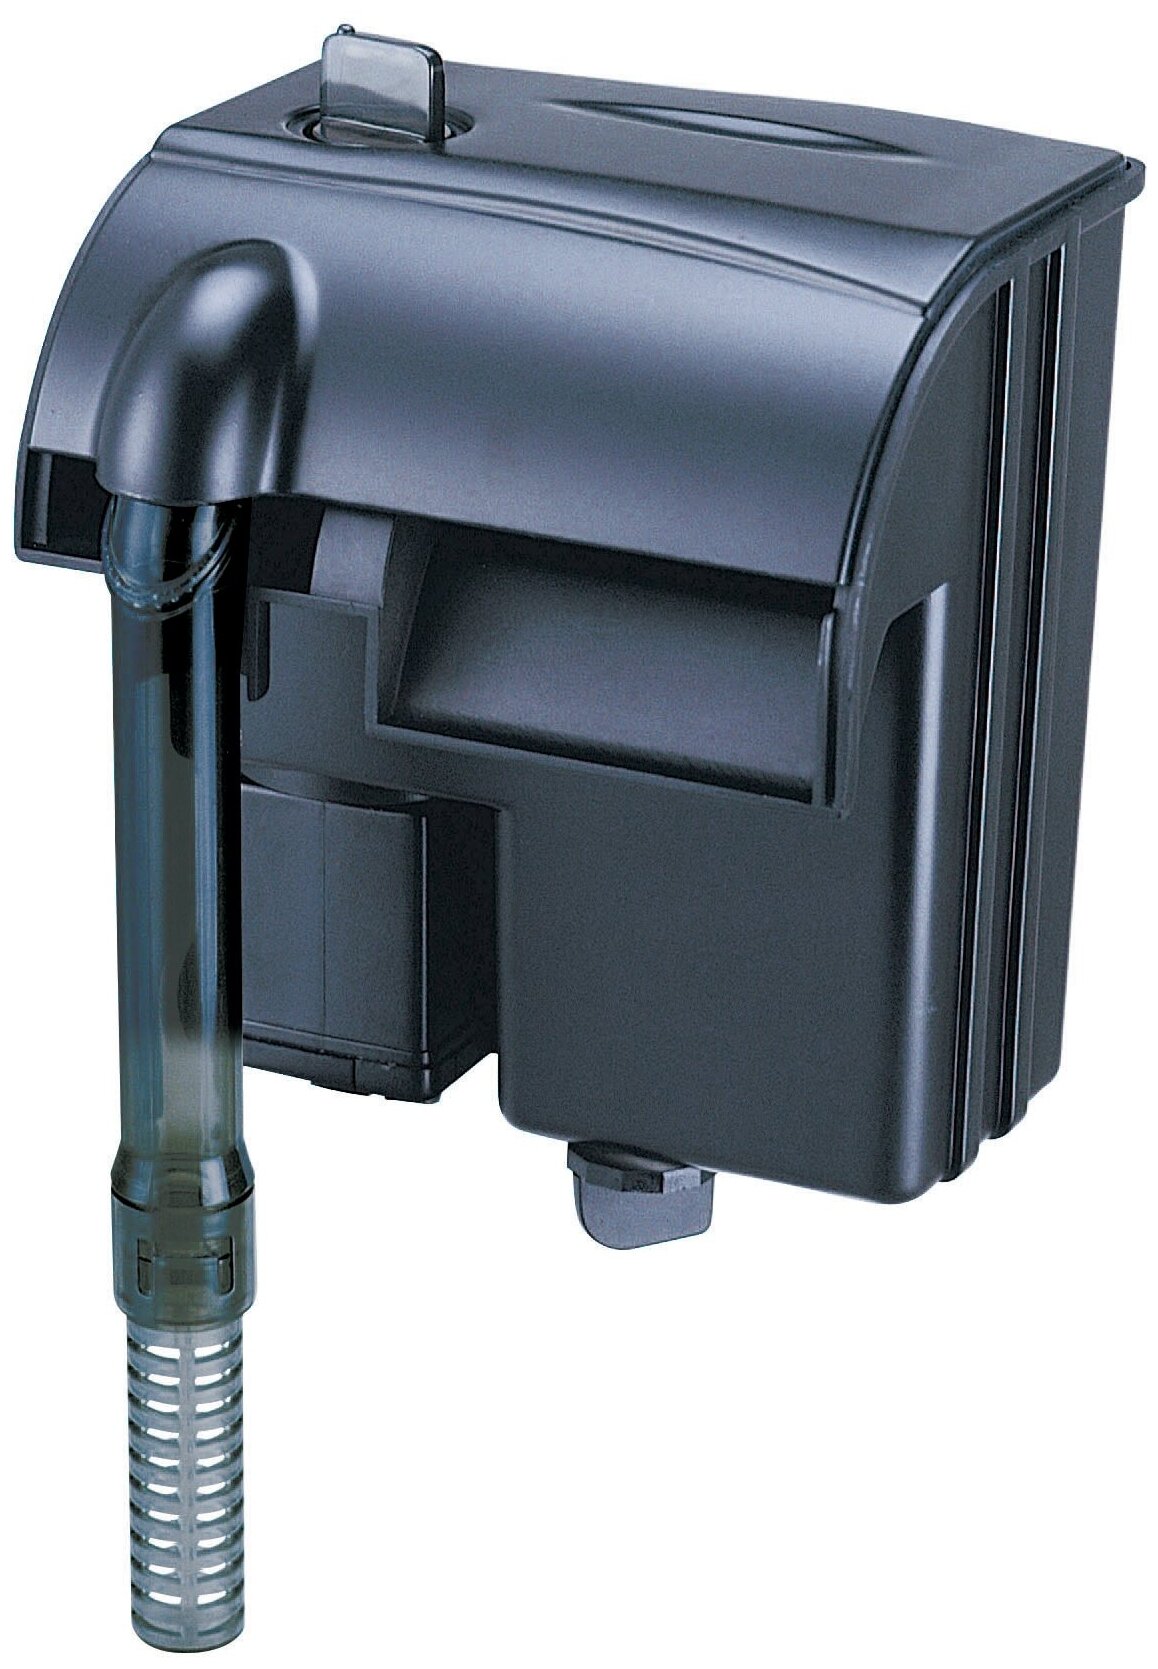 Фильтр рюкзачный Atman HF-0300 для аквариумов до 40 л, 290 л/ч, 3W (черный корпус)